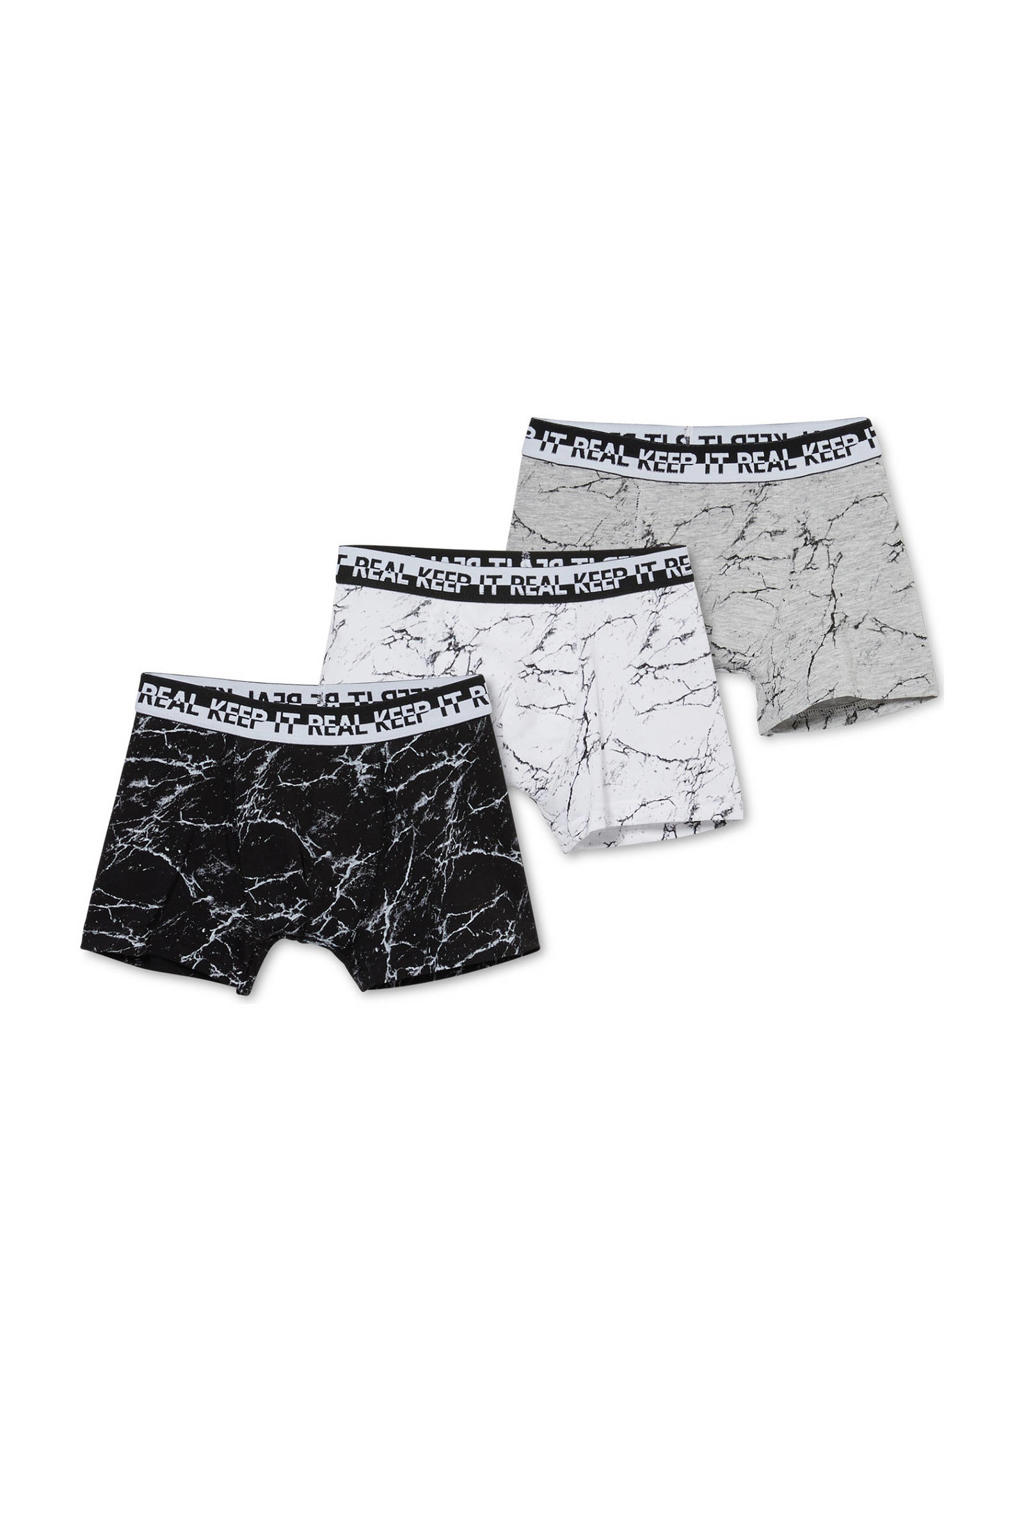 C&A   boxershort - set van 3 zwart/wit/grijs